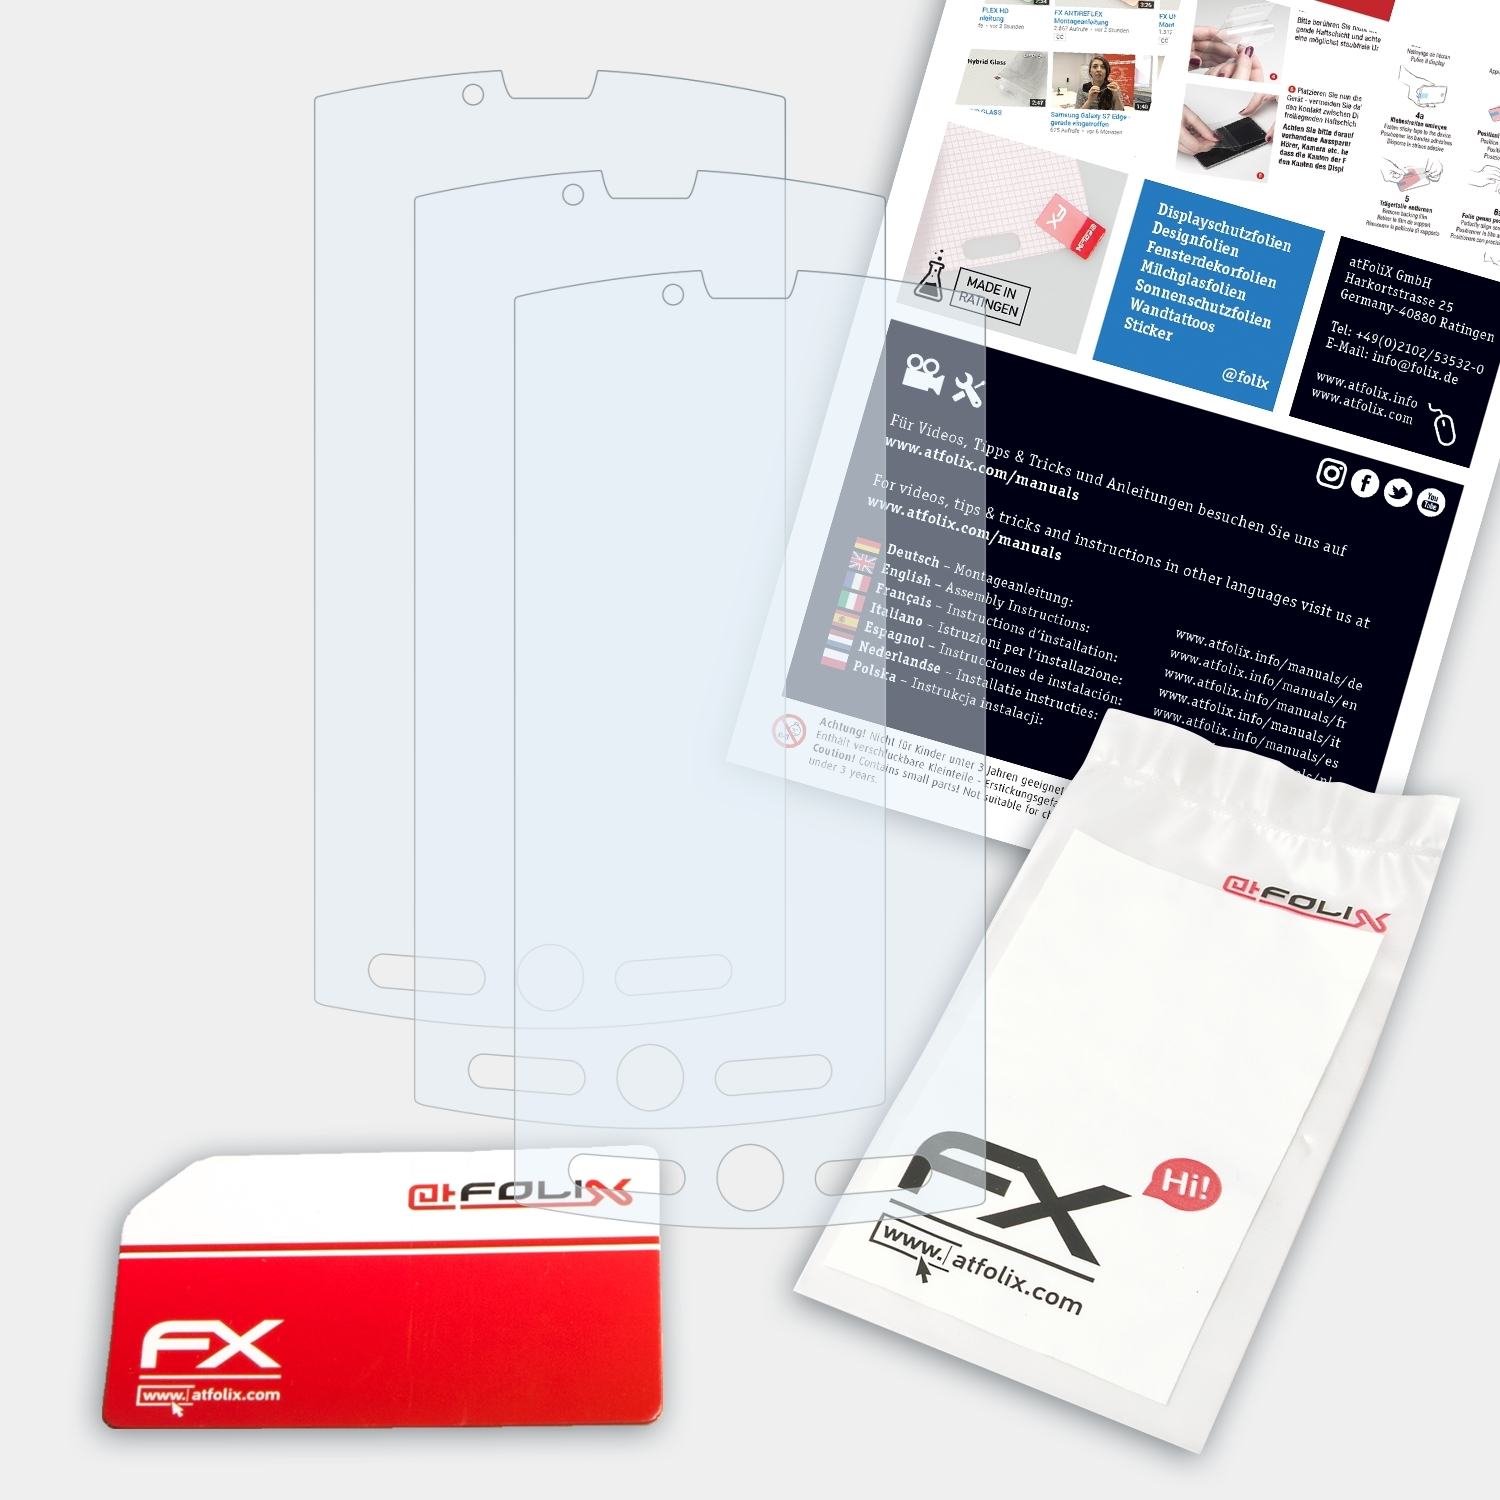 Displayschutz(für Aquos SH80F) ATFOLIX FX-Clear Sharp 3x